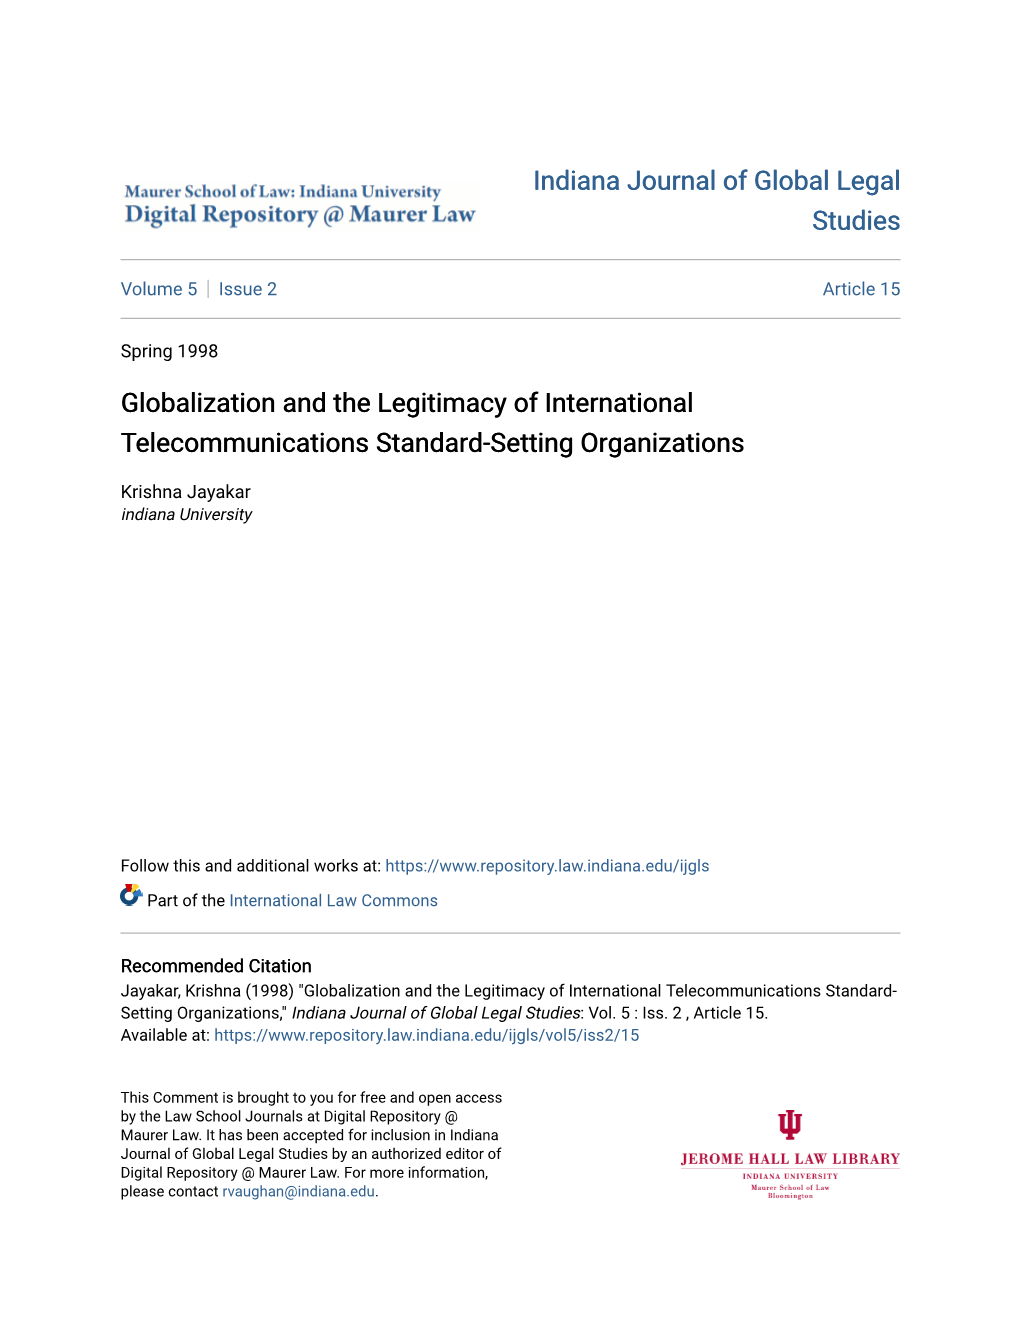 Globalization and the Legitimacy of International Telecommunications Standard-Setting Organizations